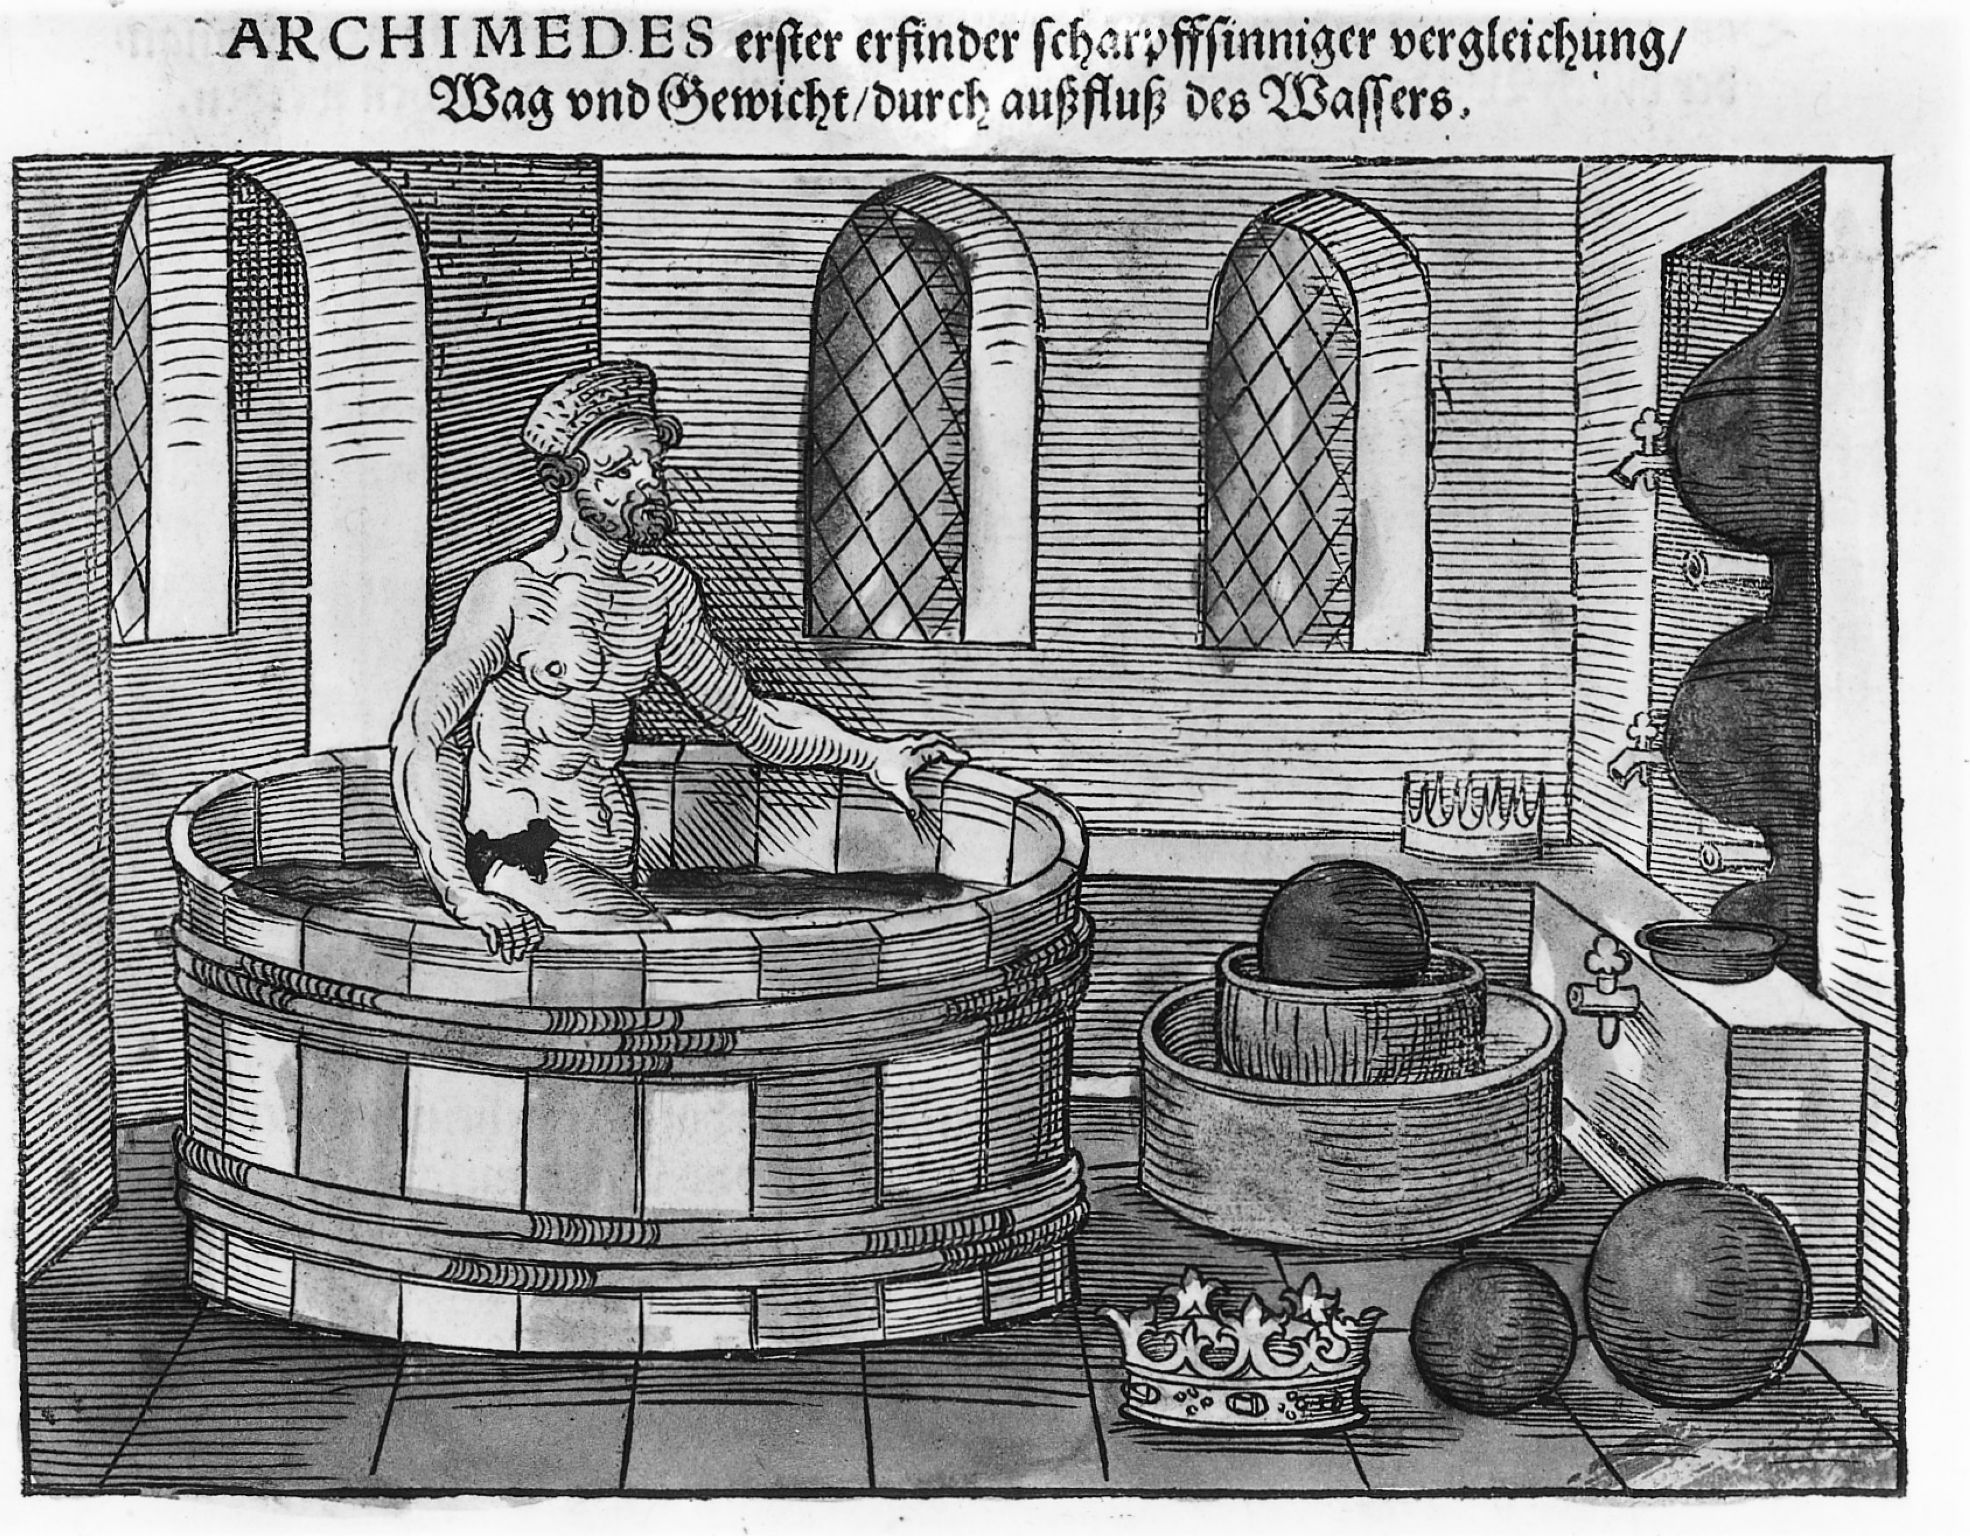 Selon la légende, c’est en prenant son bain que le savant grec Archimède aurait découvert le principe de l’hydrostatique au IIIe siècle avant J.-C.